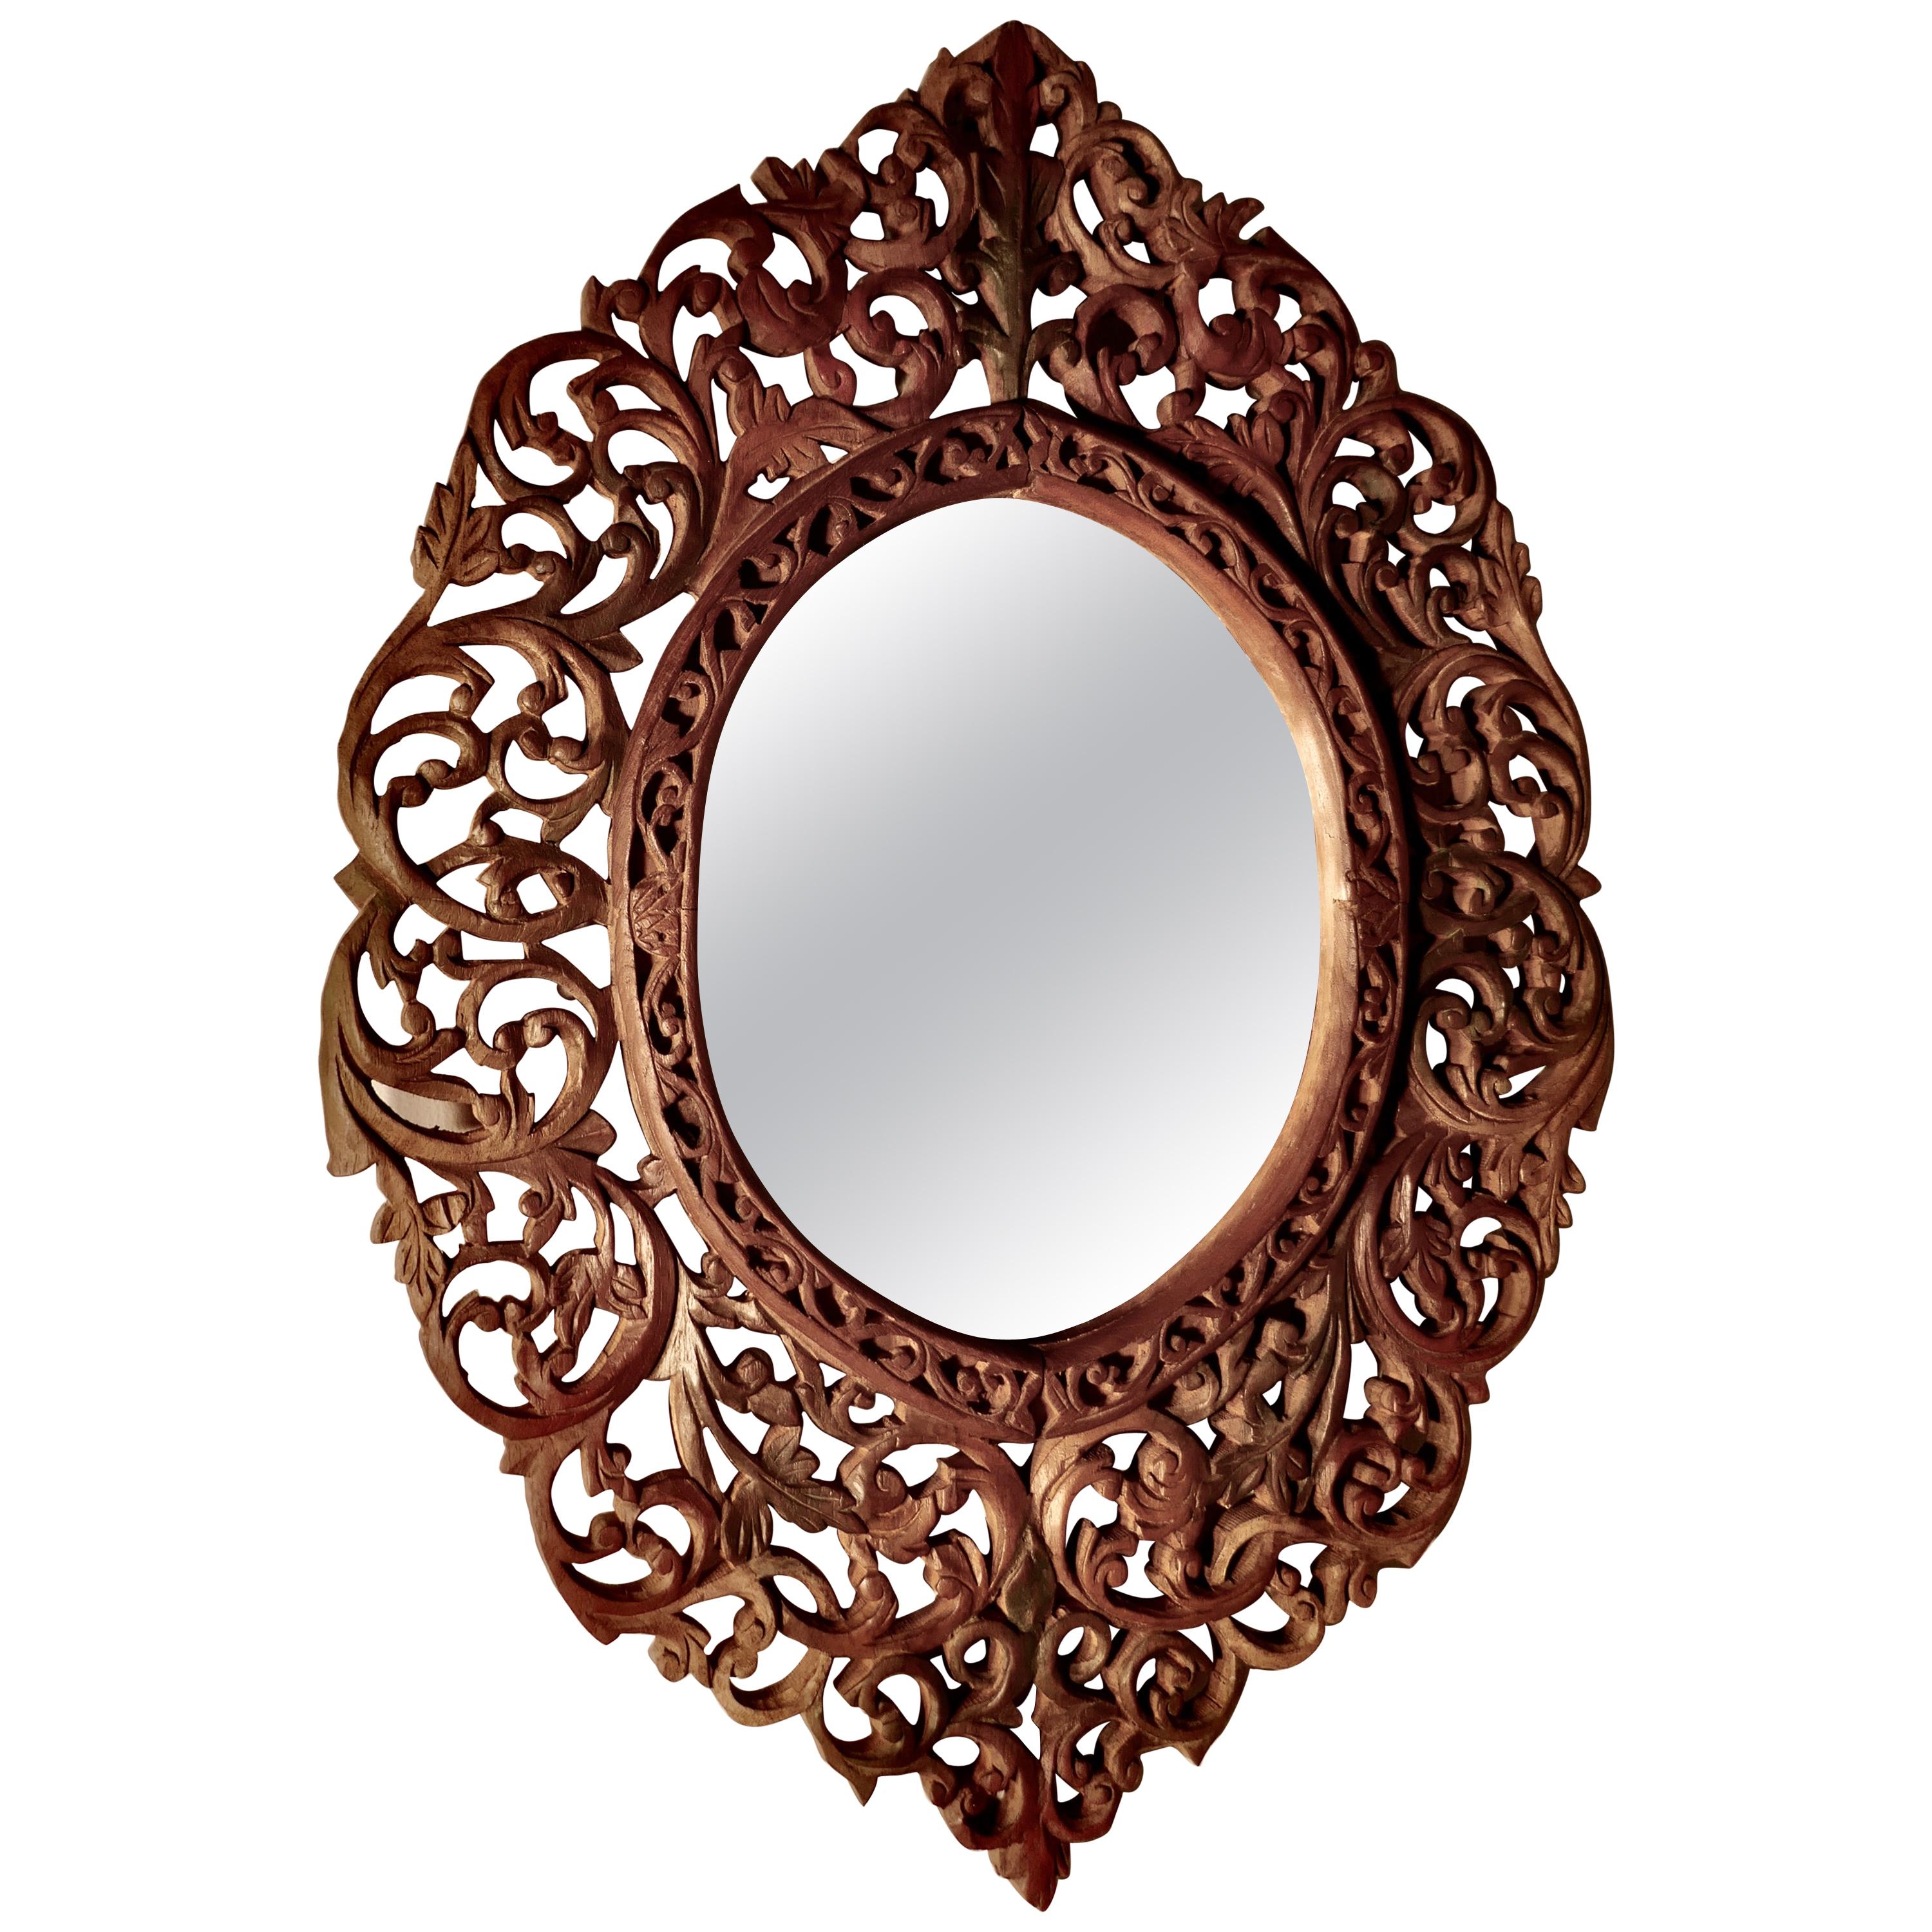 Aufwendig geschnitzter islamischer ovaler Spiegel